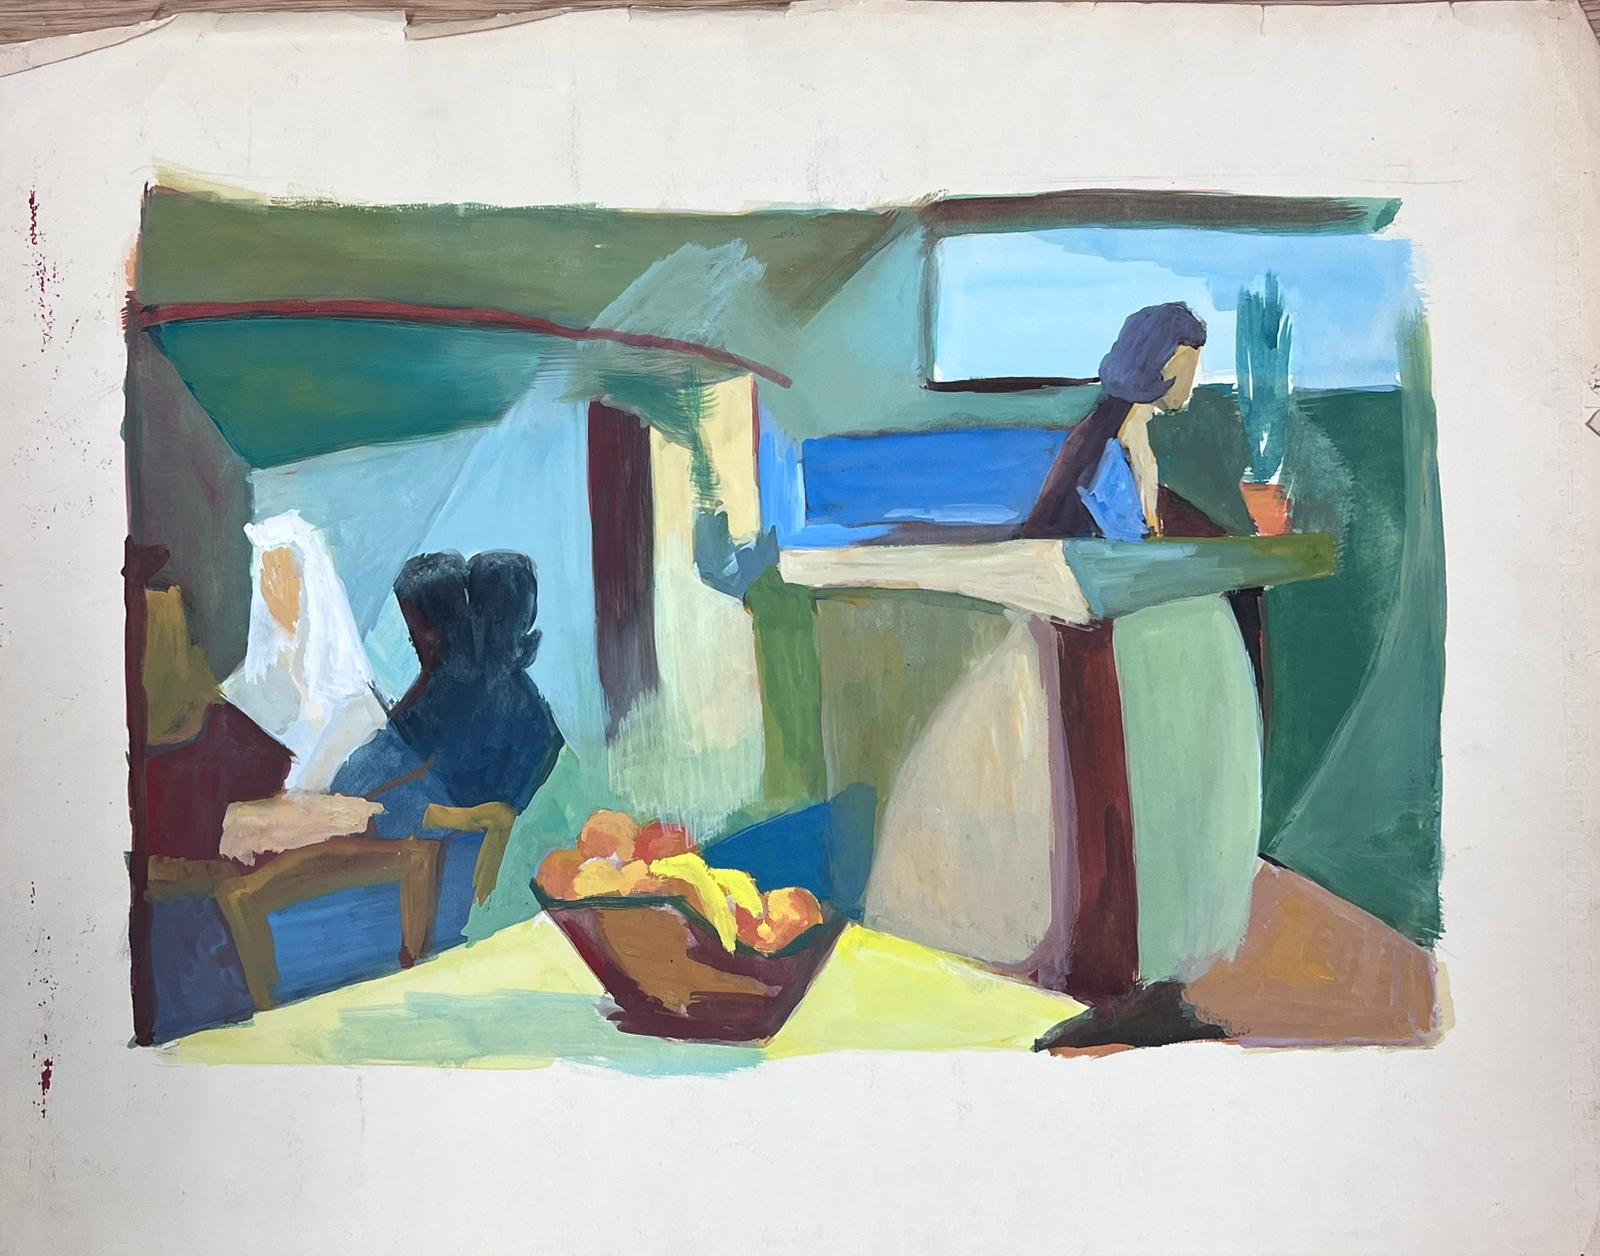 Französische kubistische modernistische Interieur-Kaffee-Szene des 20. Jahrhunderts mit Figuren – Painting von Guy Nicod